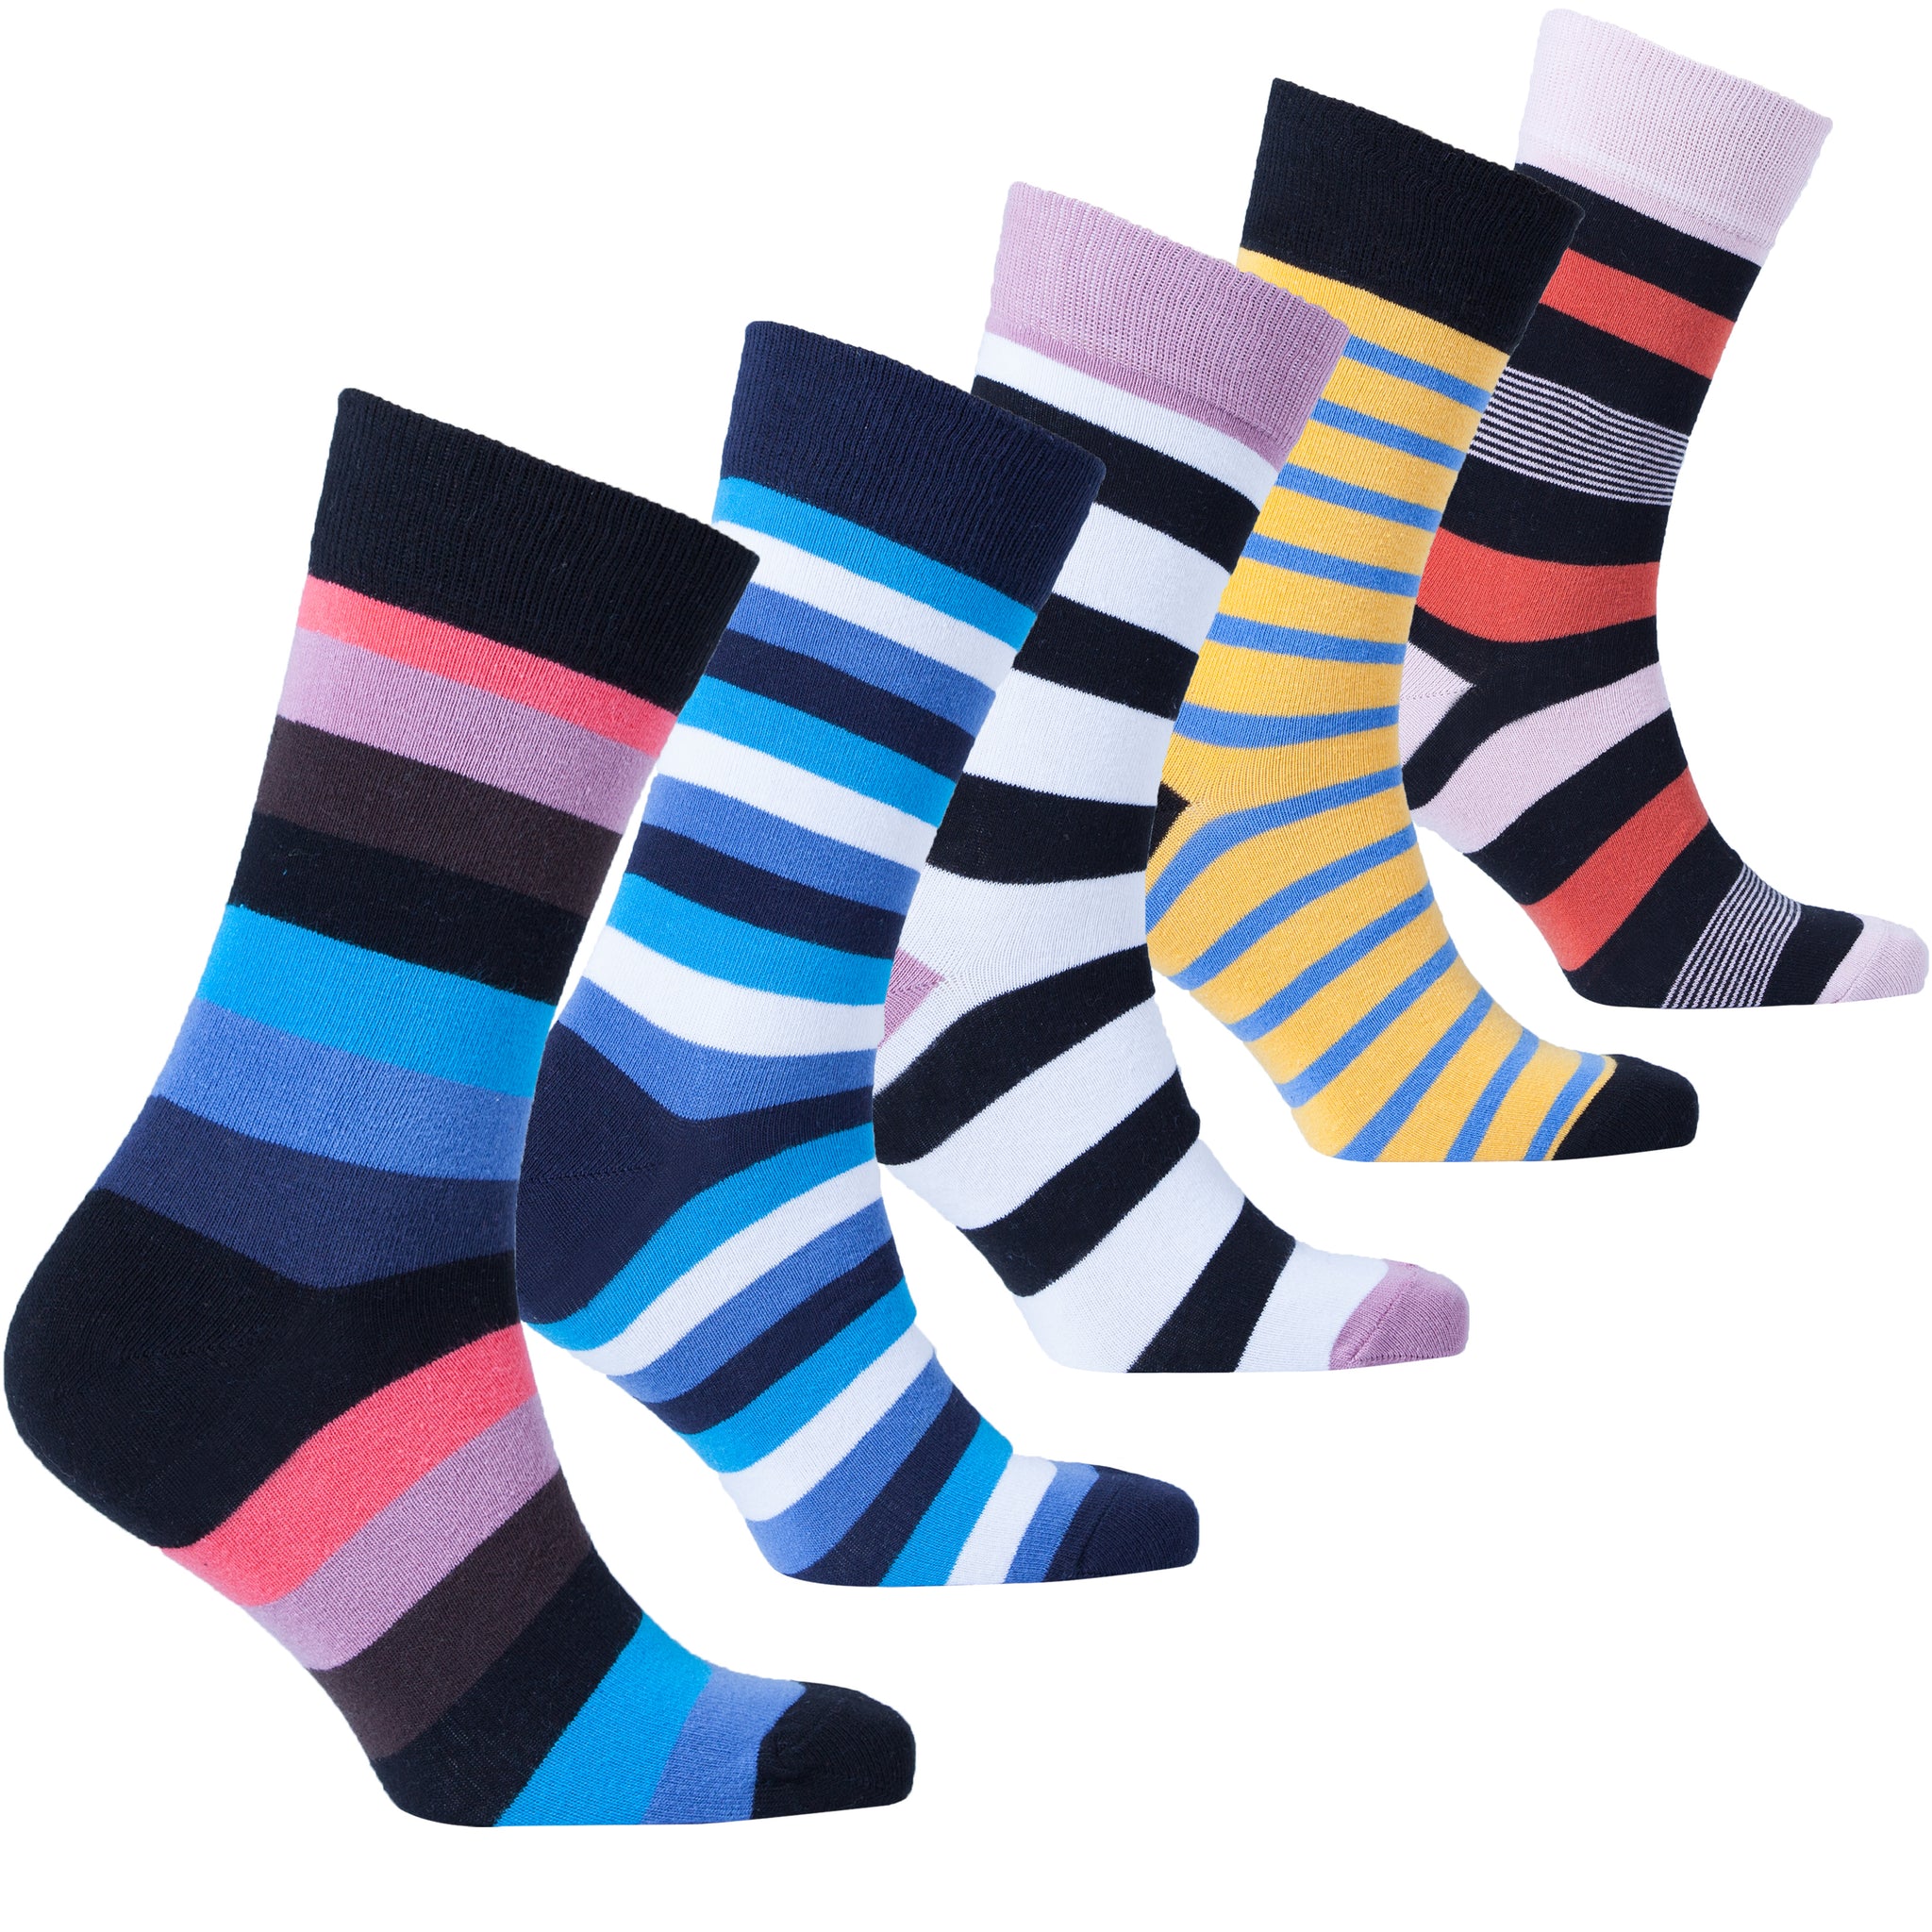 Men's Classy Stripes Socks